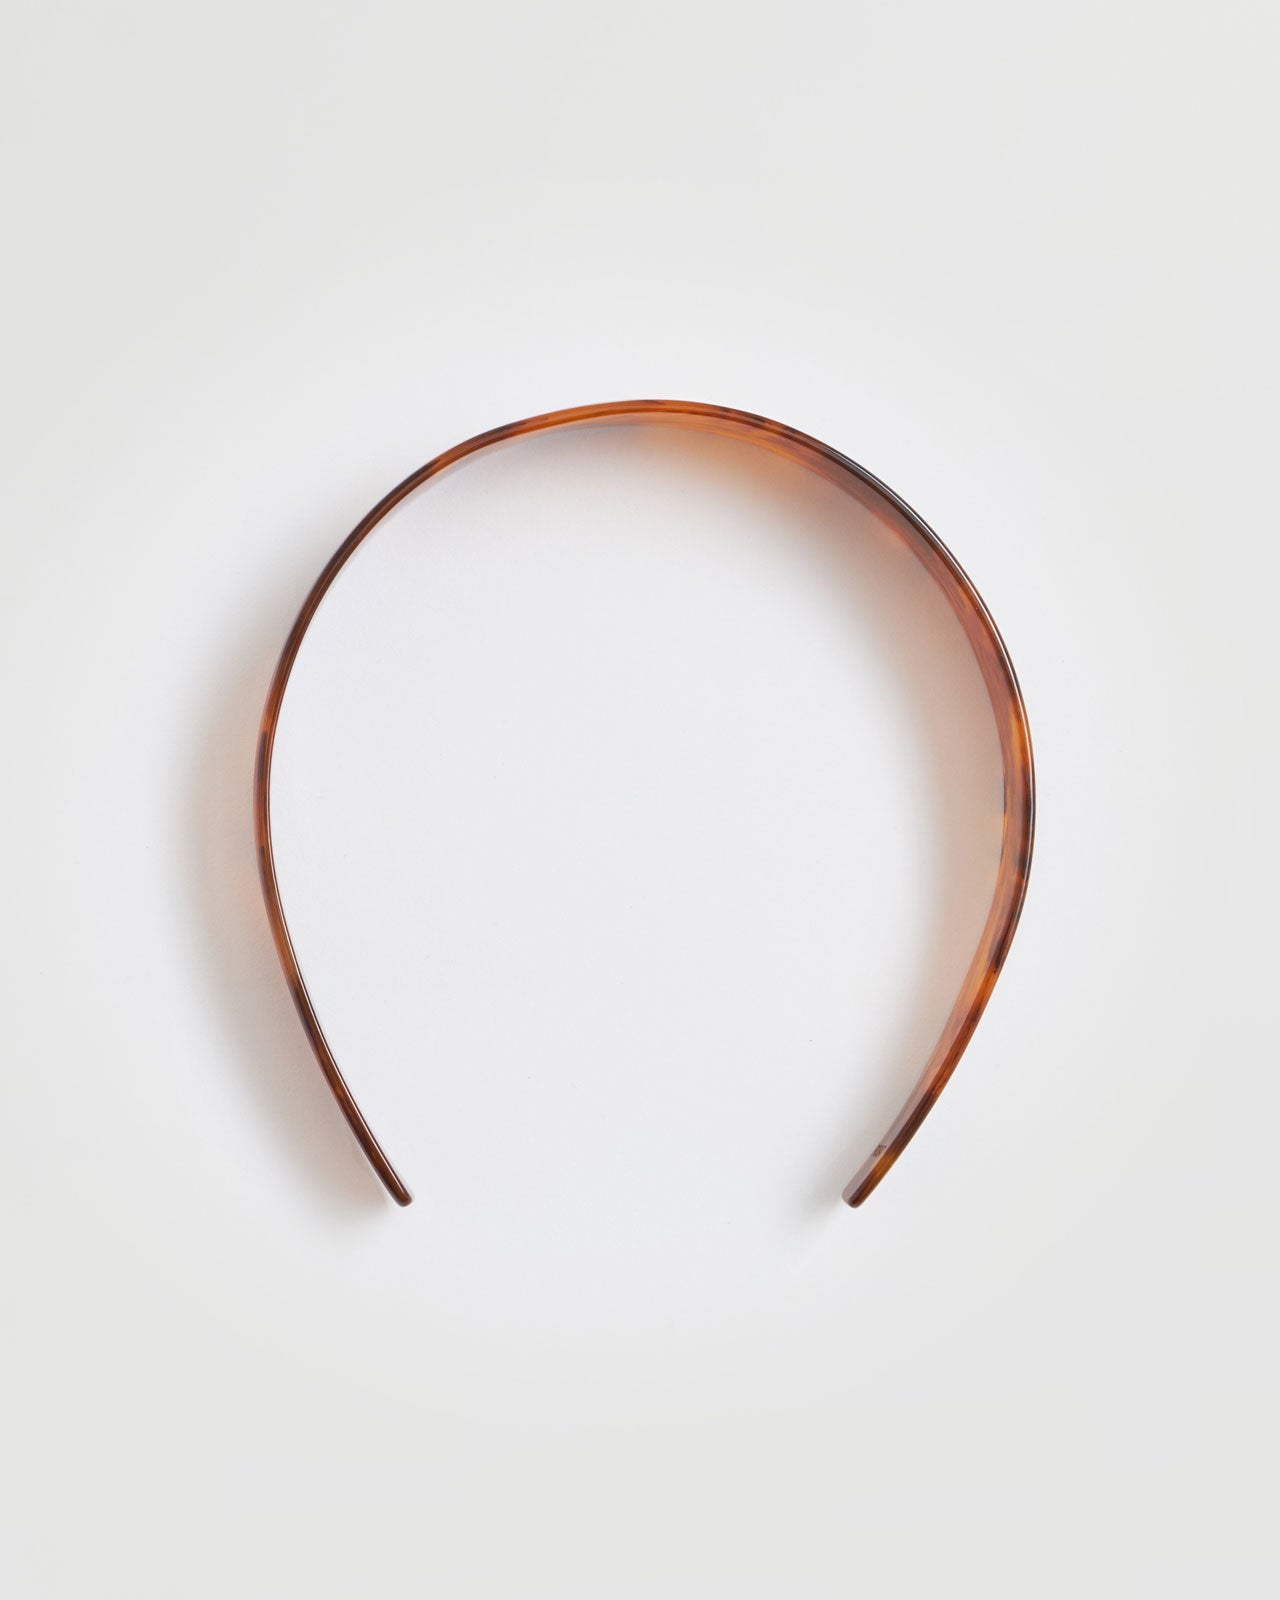 IRIS47 Torotoiseshell headband – Shinzone